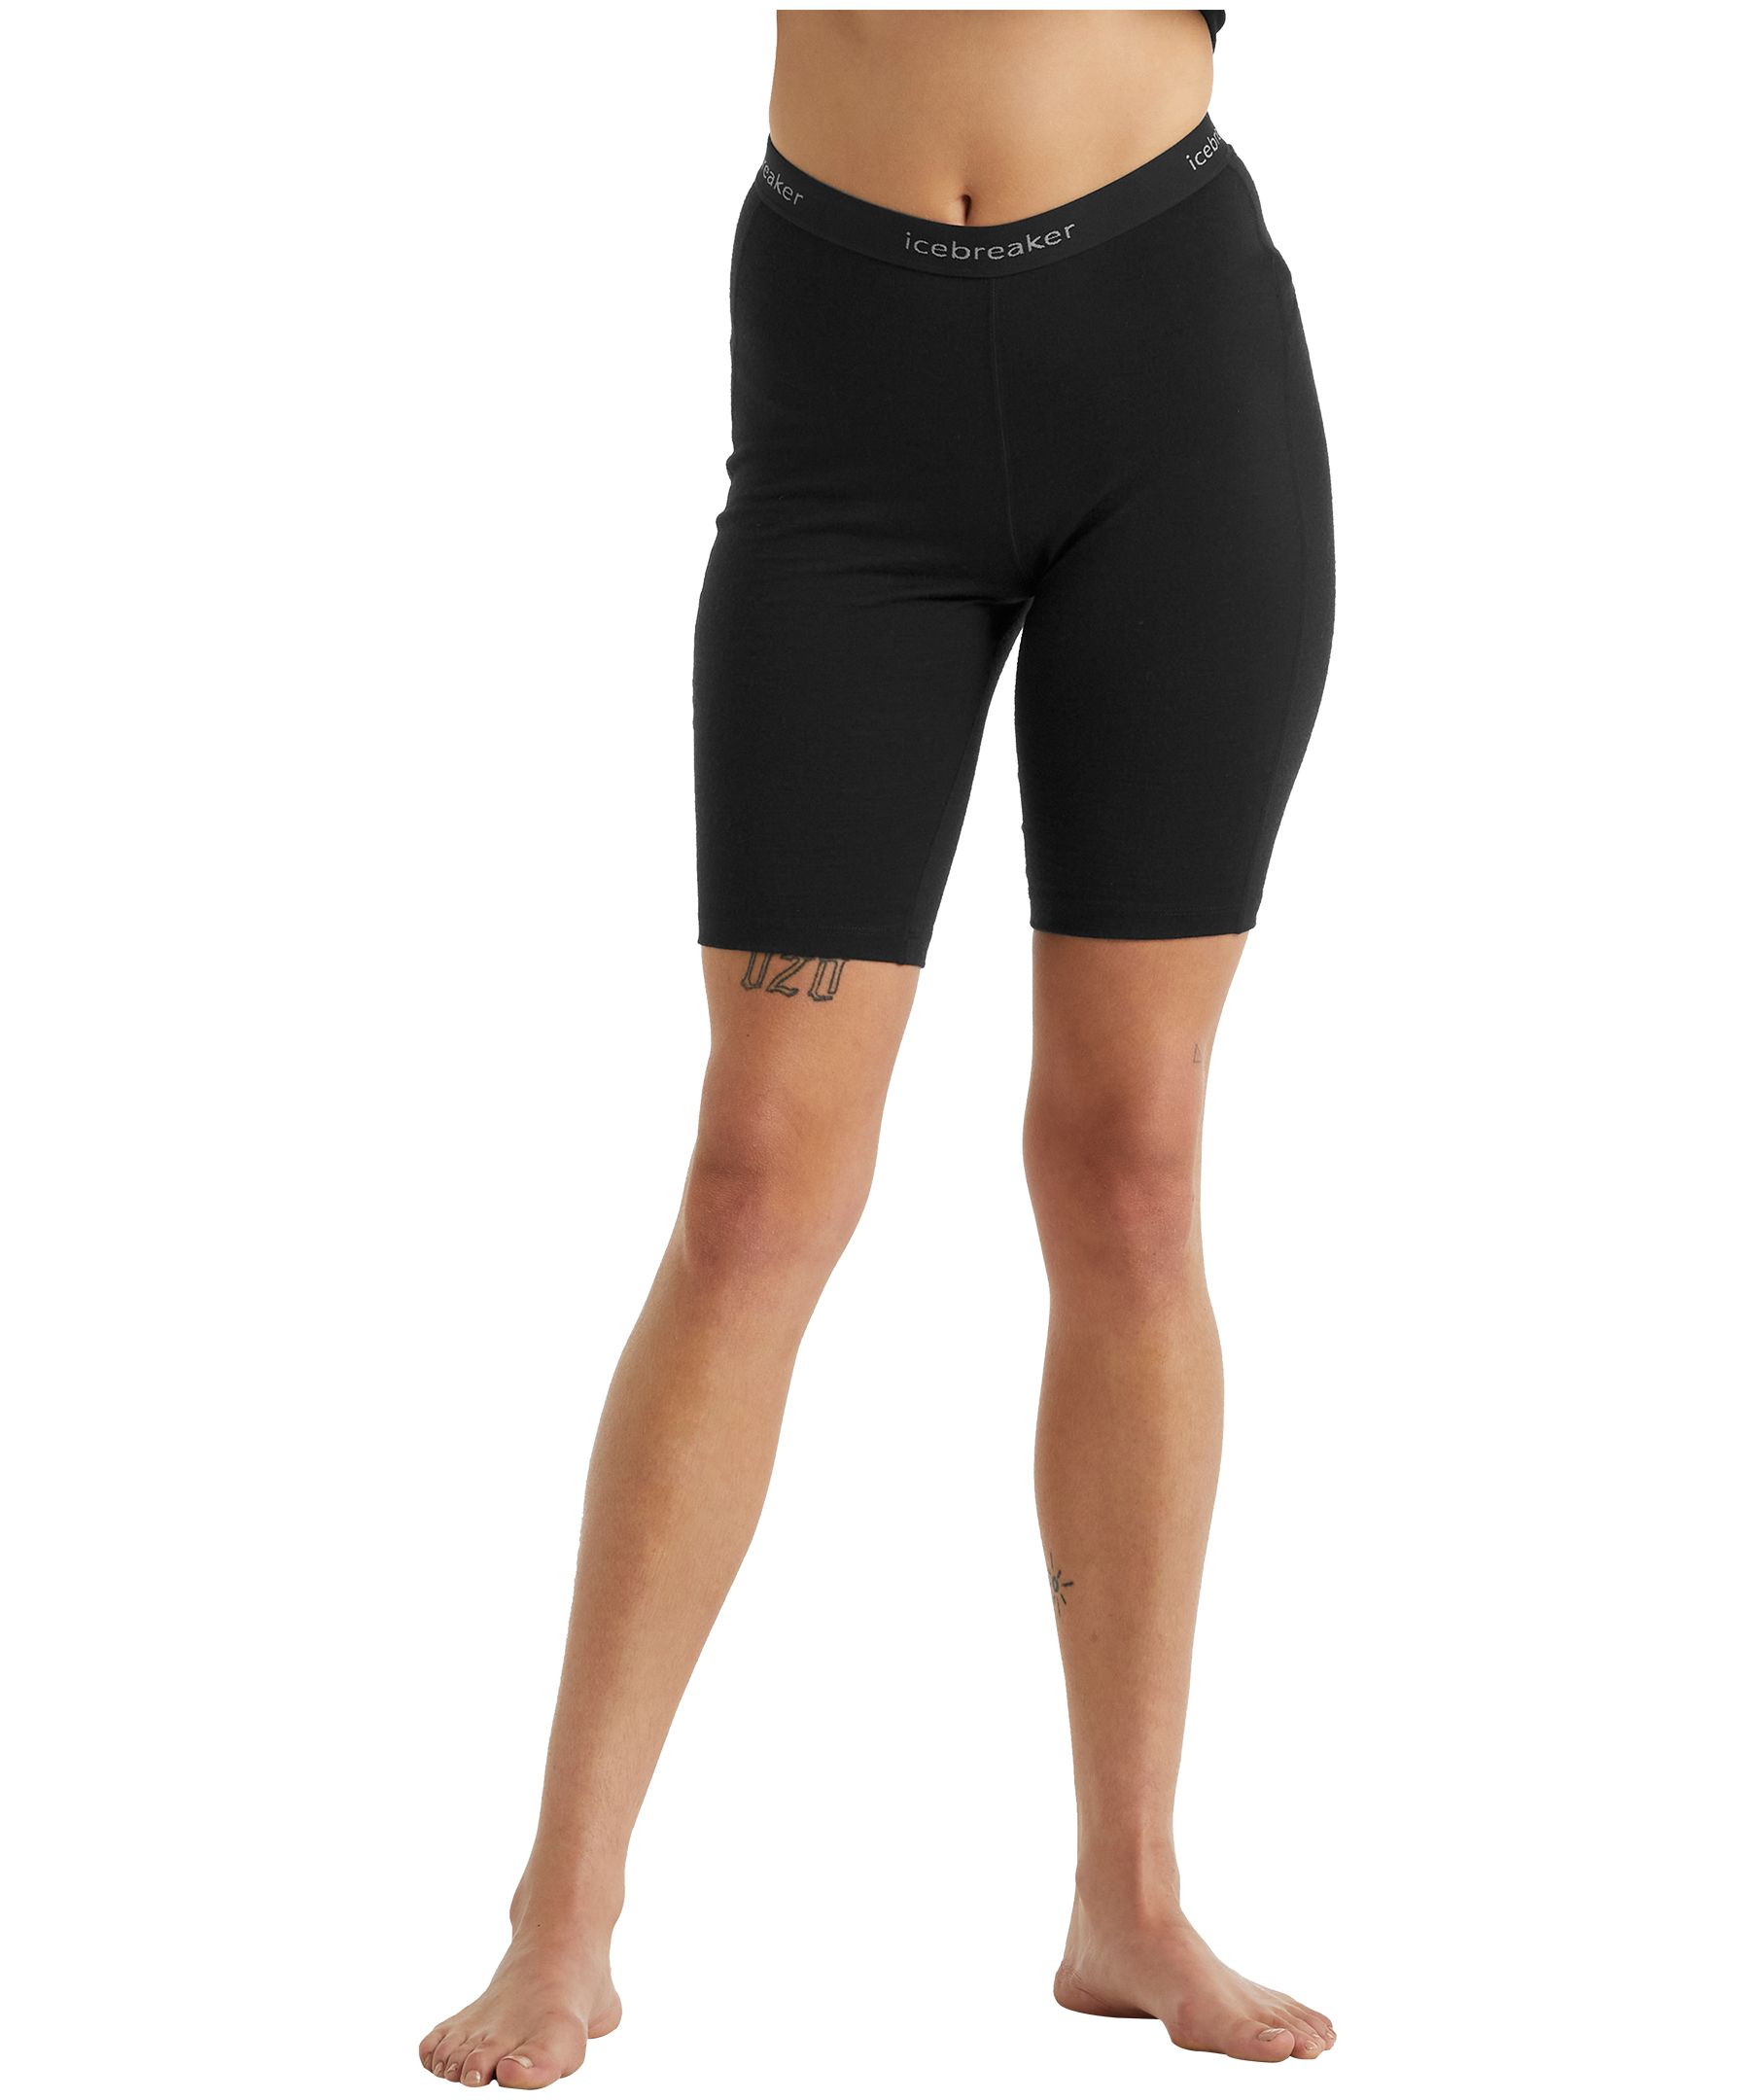 Buy Women's Shorts Online